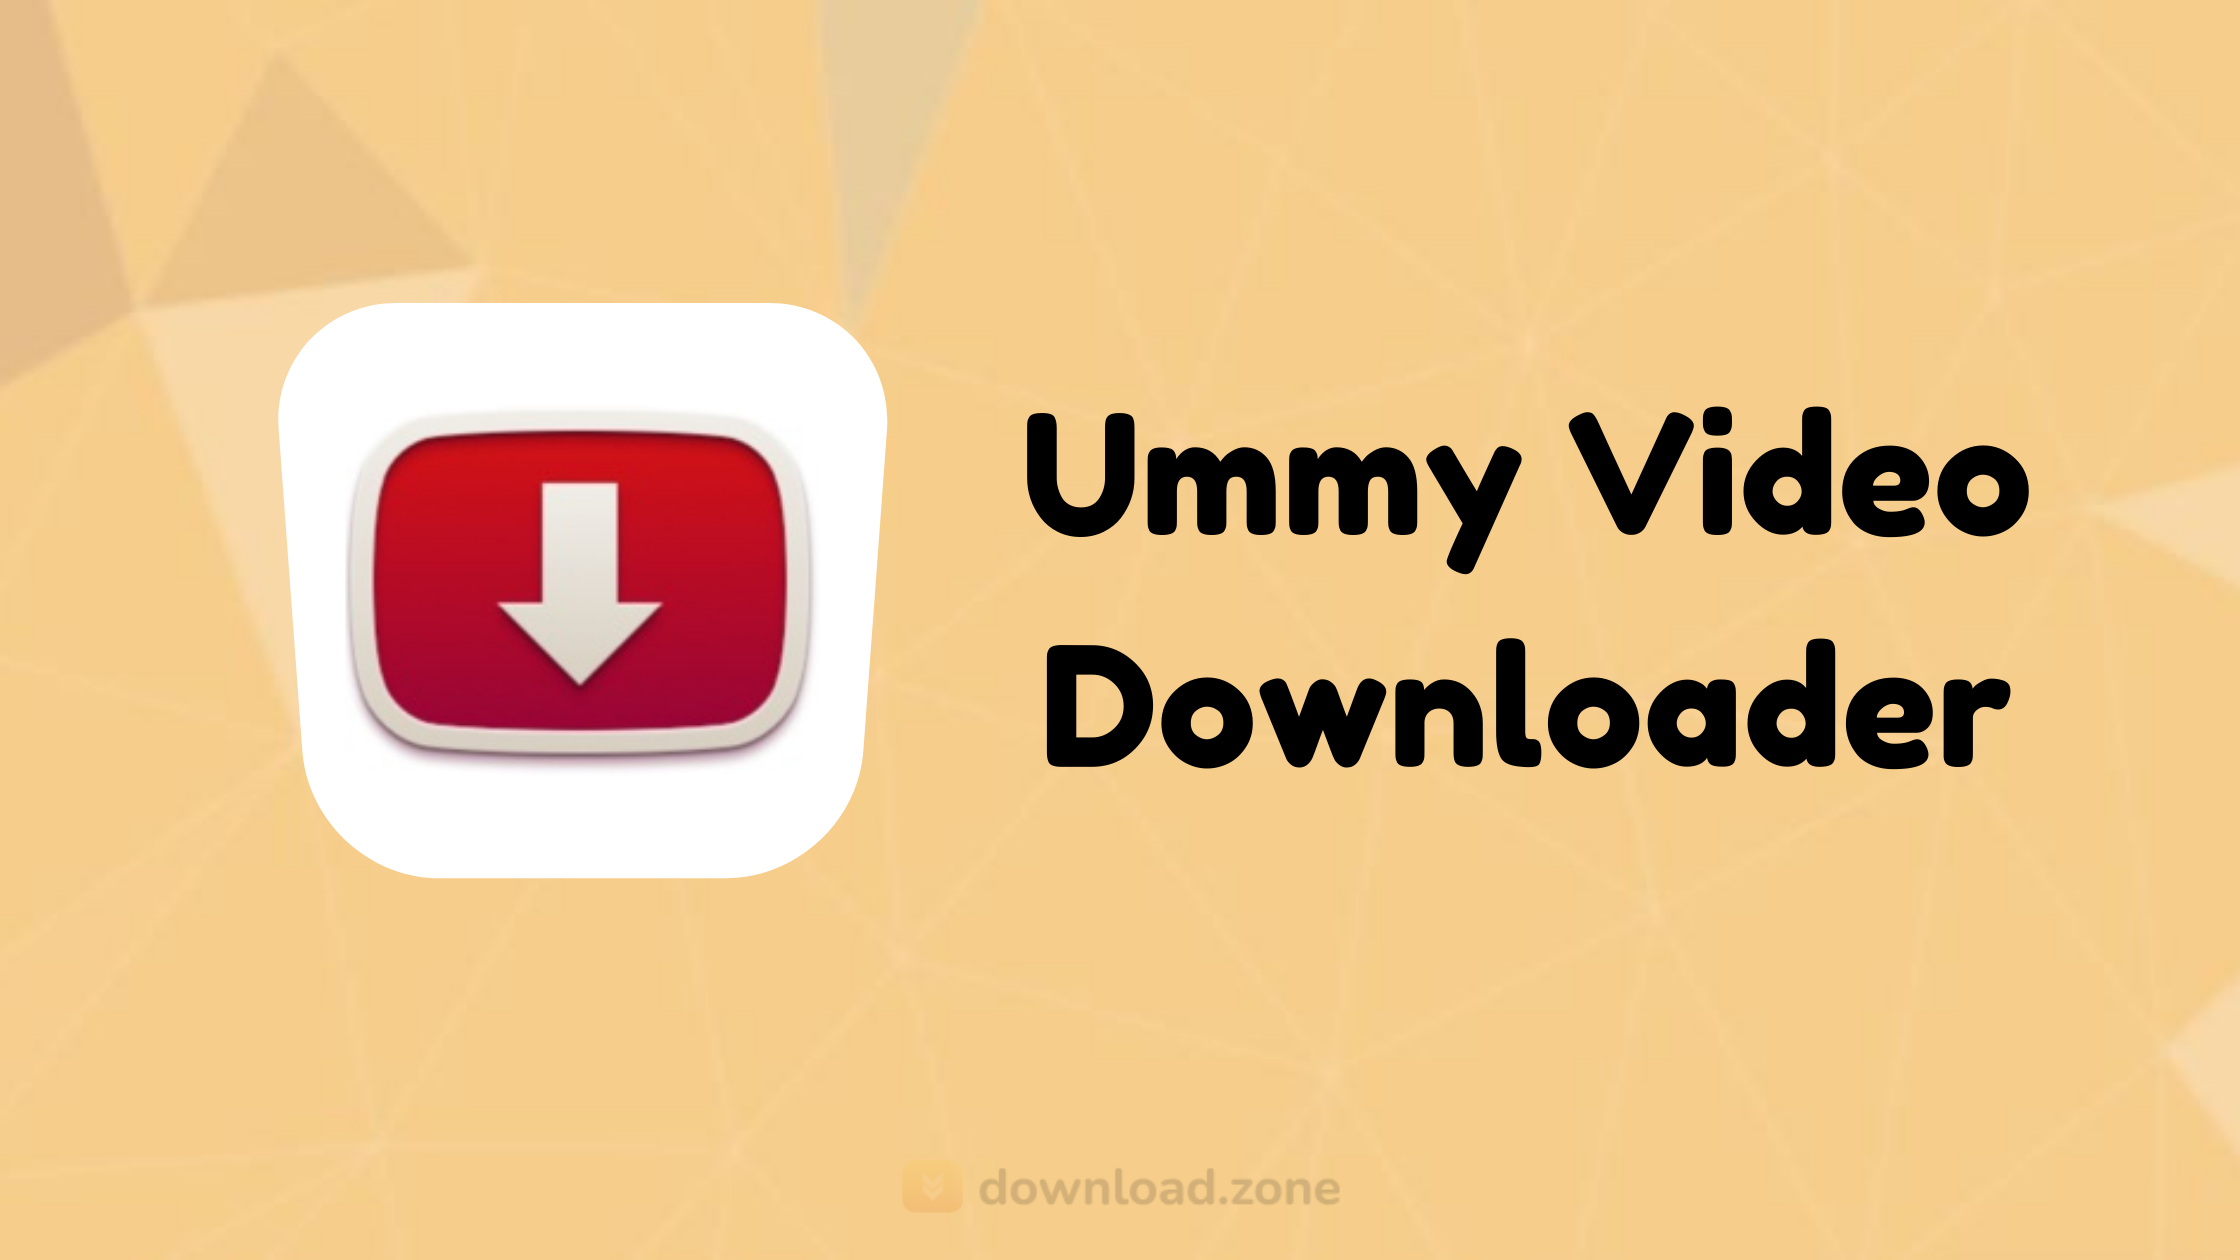 download ummy video downloader crack for mac